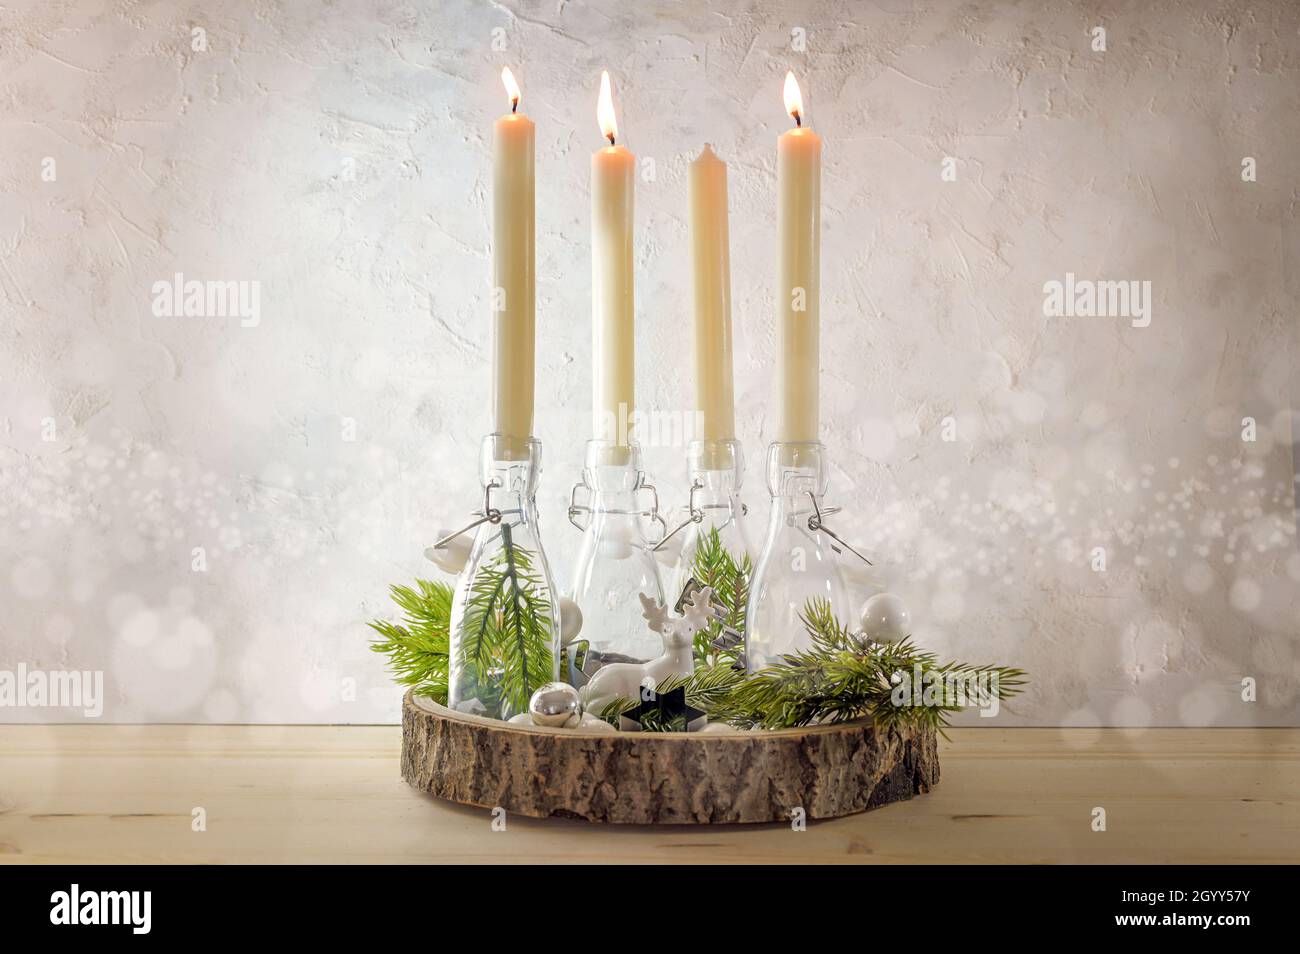 Kreativer Adventskranz, Kerzen in Flaschen auf einem Holzbrett mit Tannenzweigen und Dekoration an einer hellen rustikalen Wand, drei werden am dritten angezündet Stockfoto